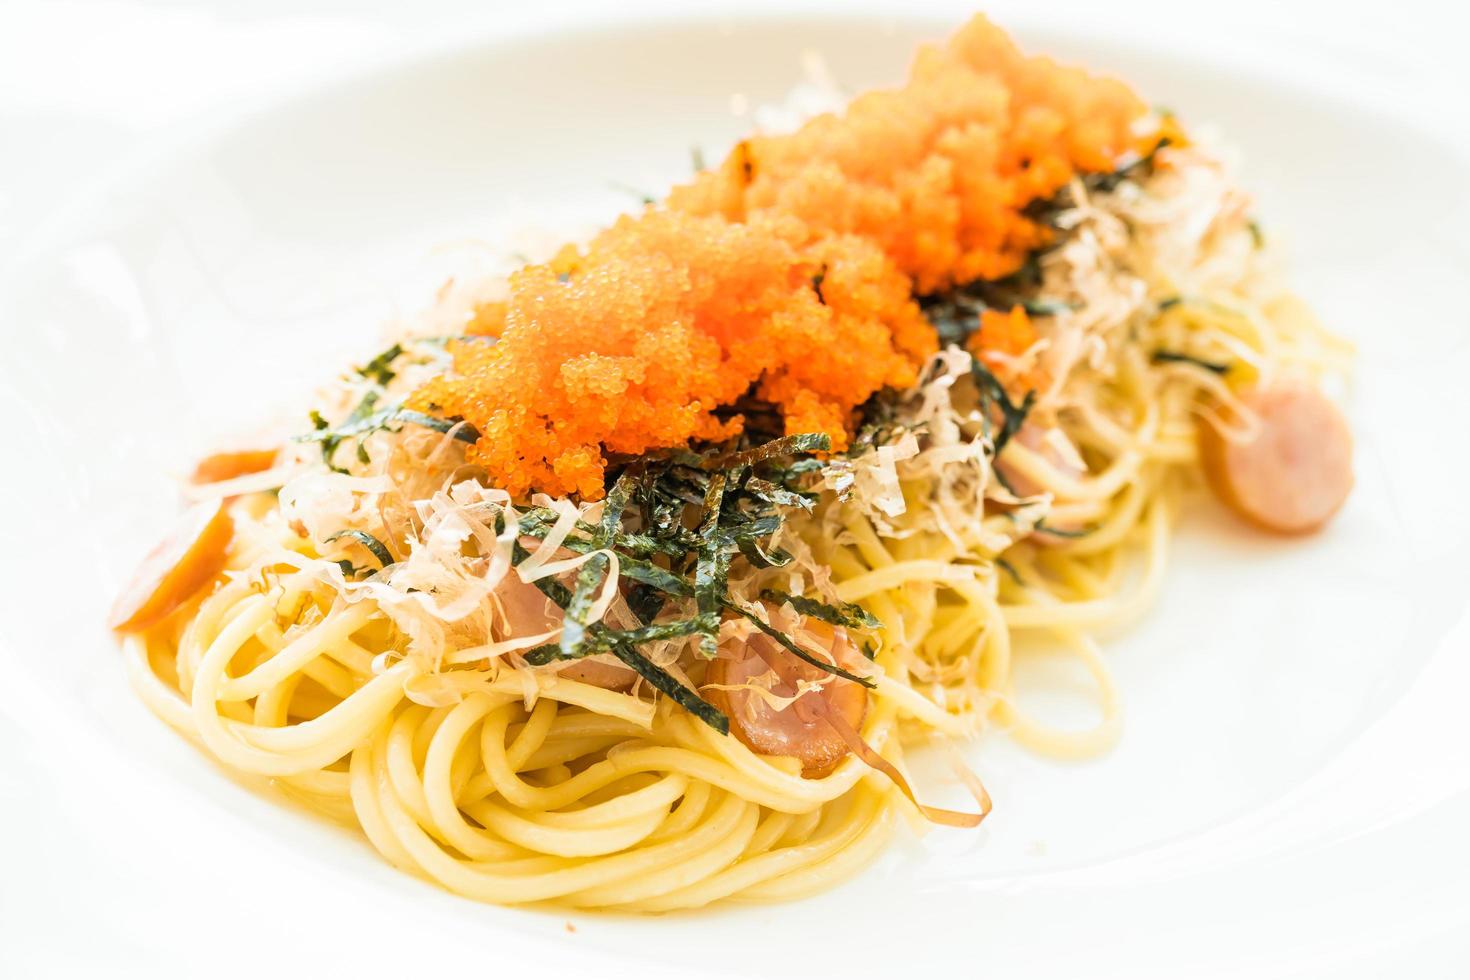 spaghetti aux saucisses, oeuf de crevettes, algues, calamars secs sur le dessus photo